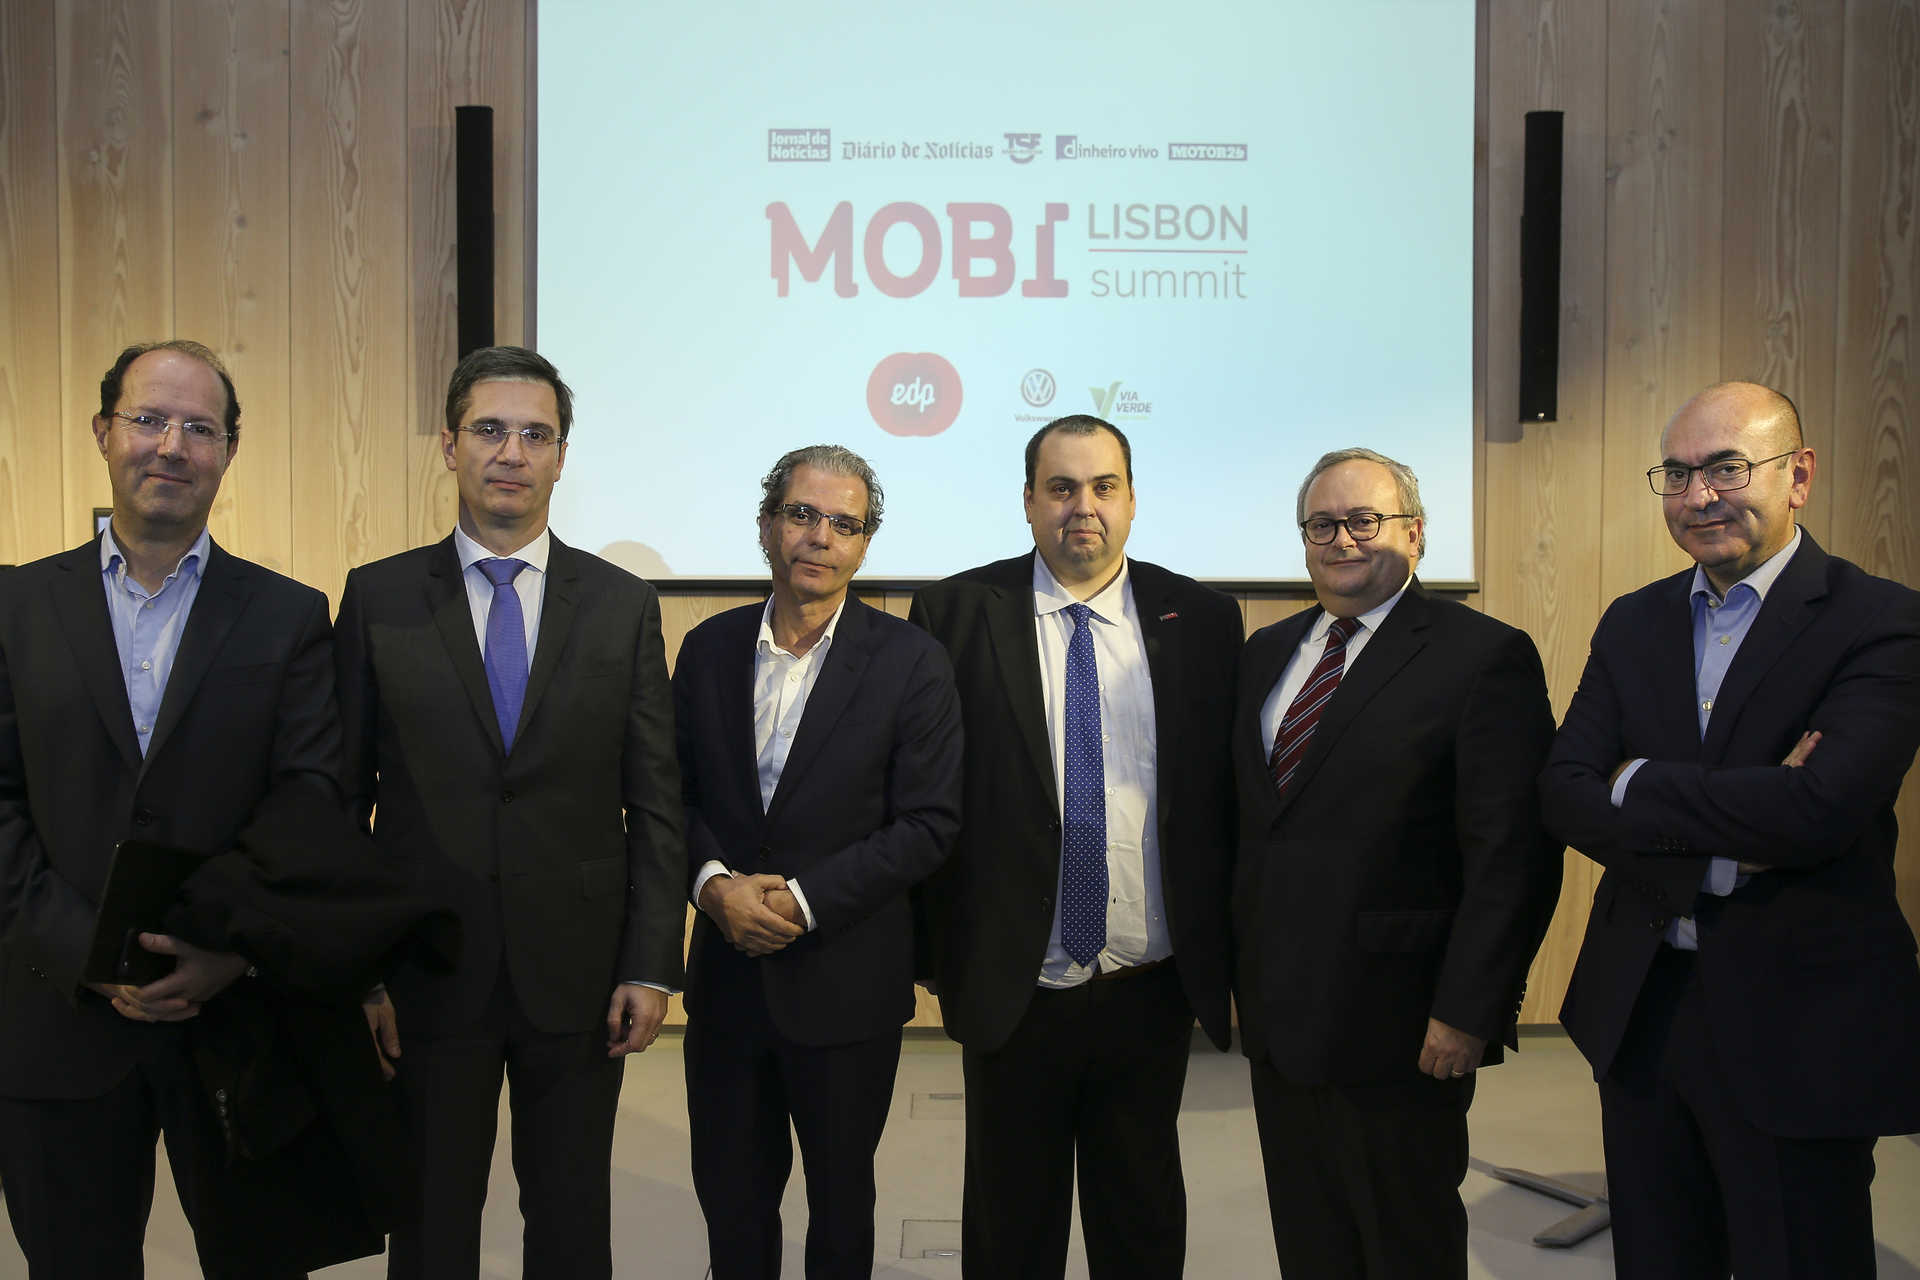 Conferência de Imprensa: Lisbon Mobi Summit